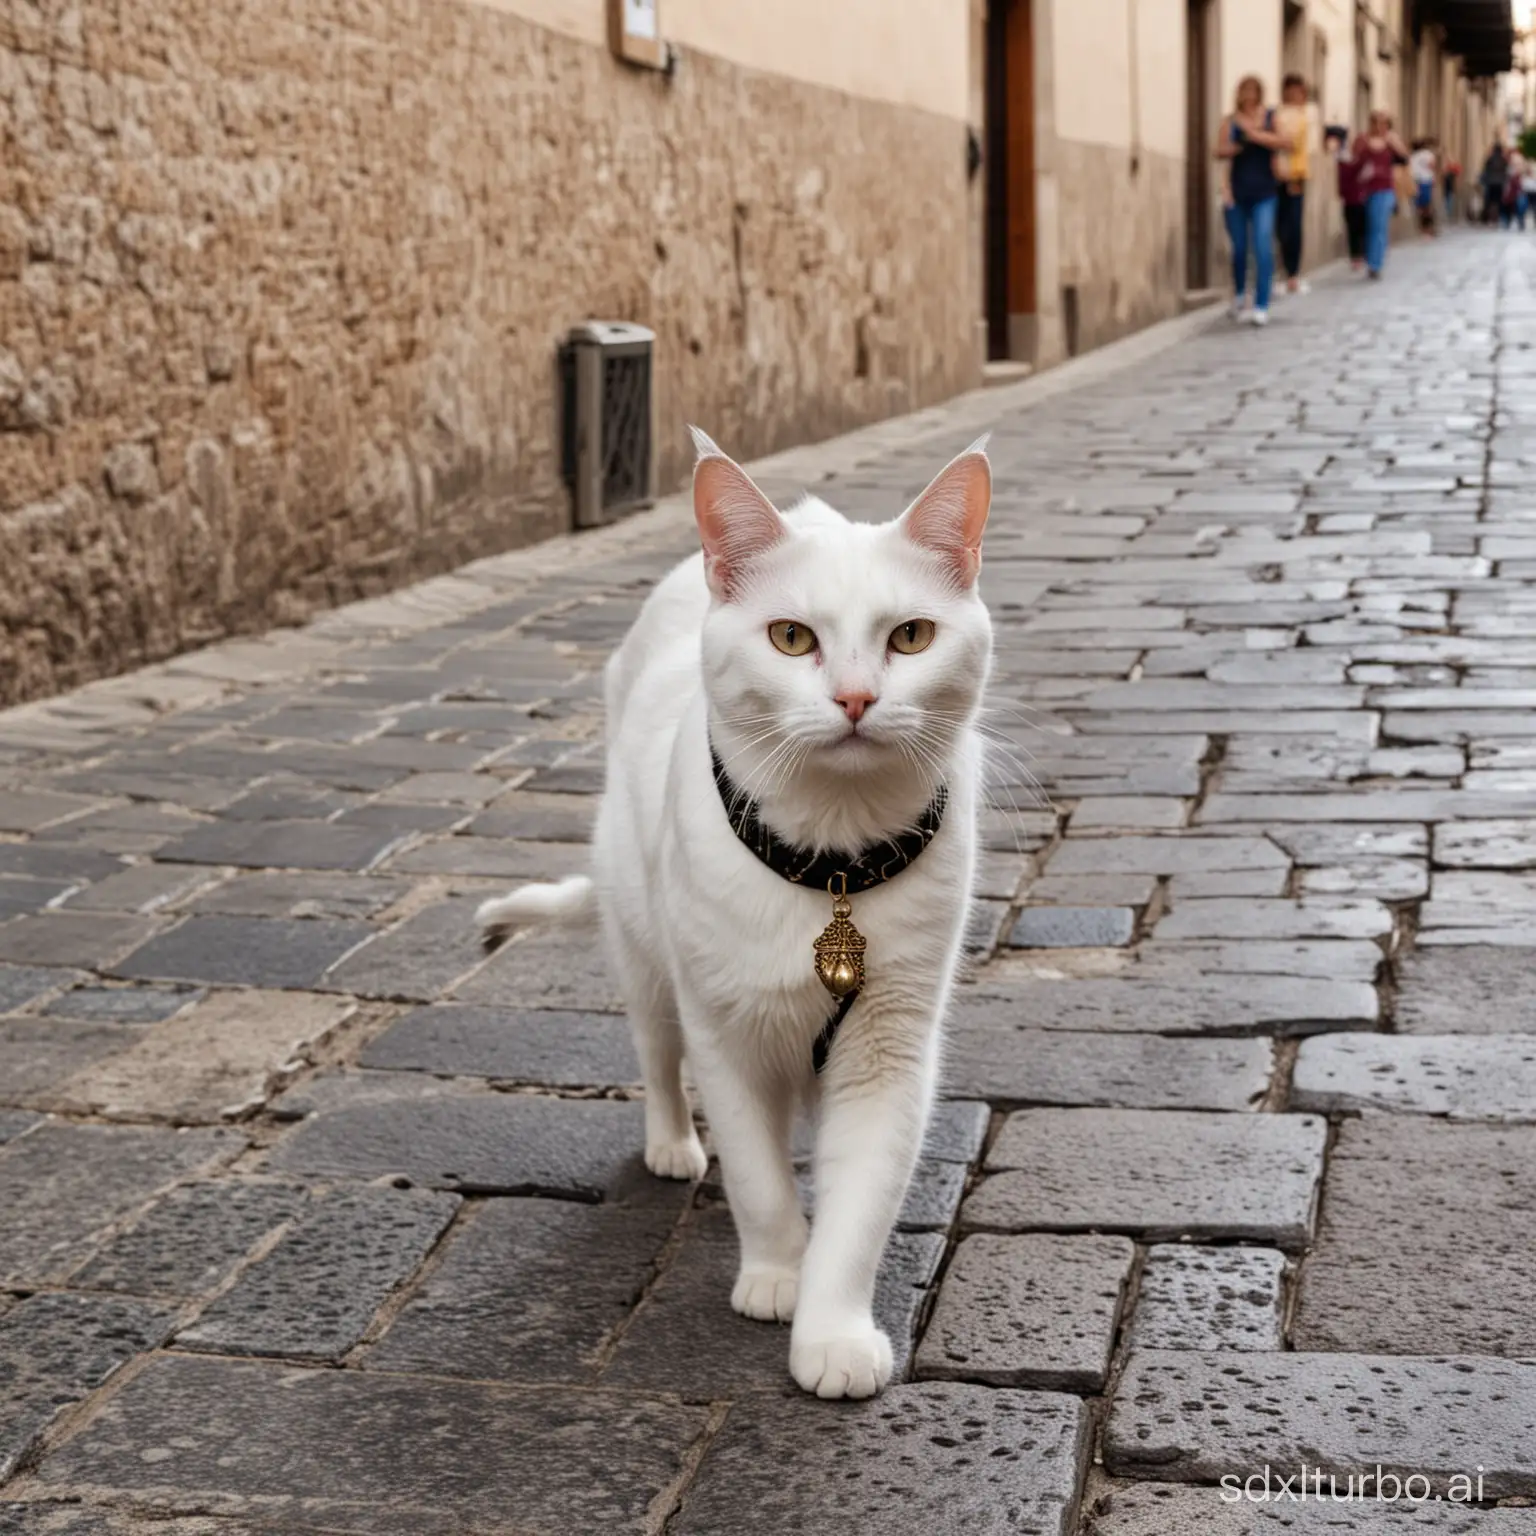 Feline-Participant-in-Spanish-Holy-Week-Celebration